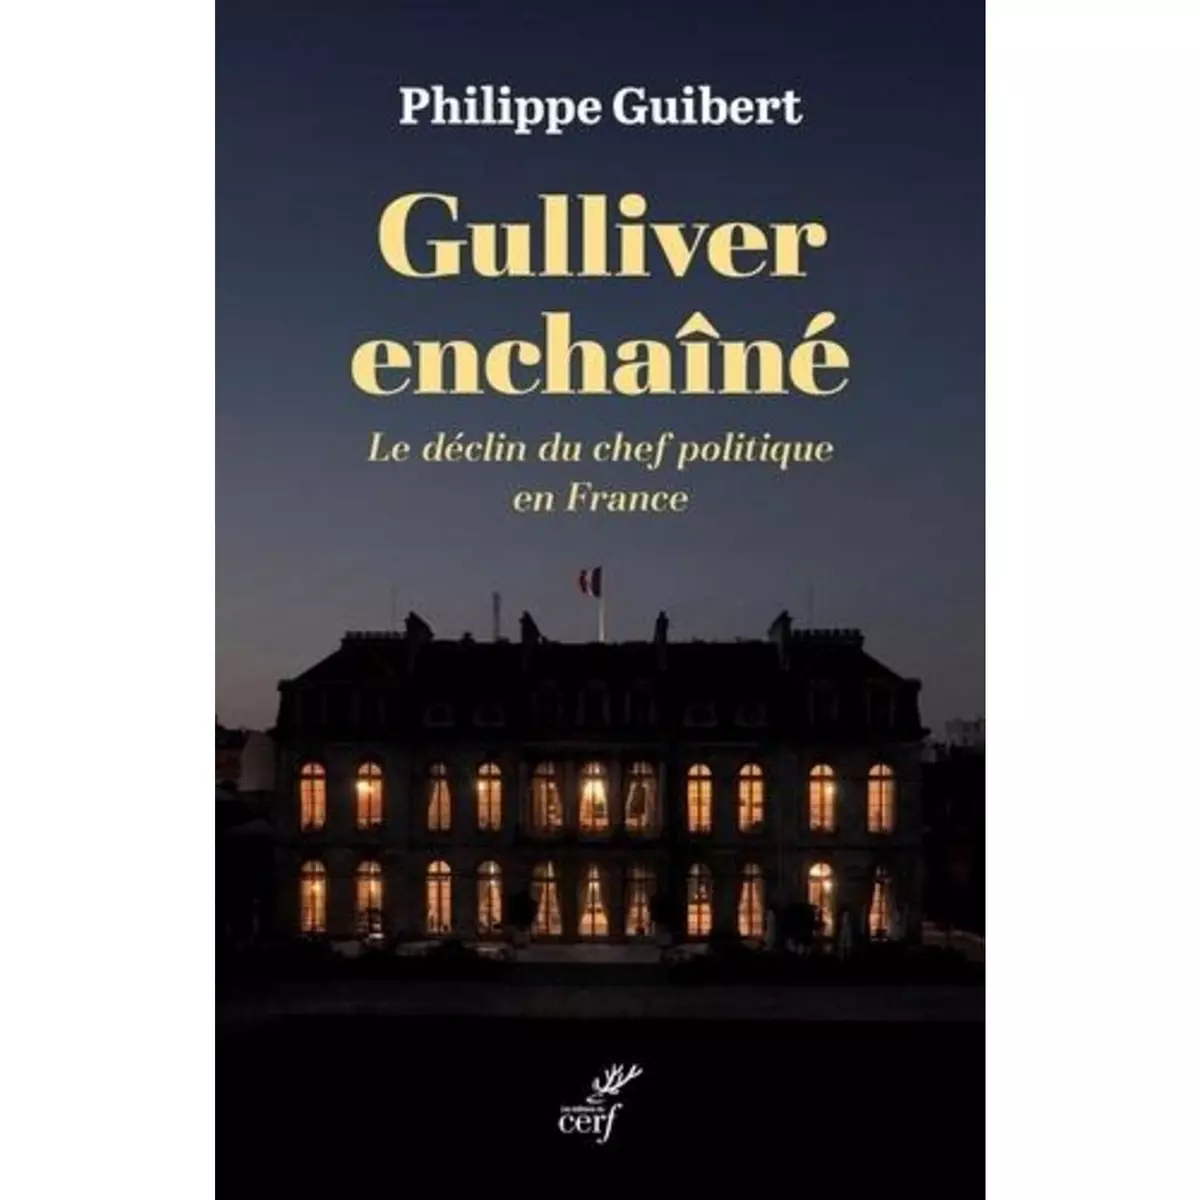  GULLIVER ENCHAINE. LE DECLIN DU CHEF POLITIQUE EN FRANCE, Guibert Philippe